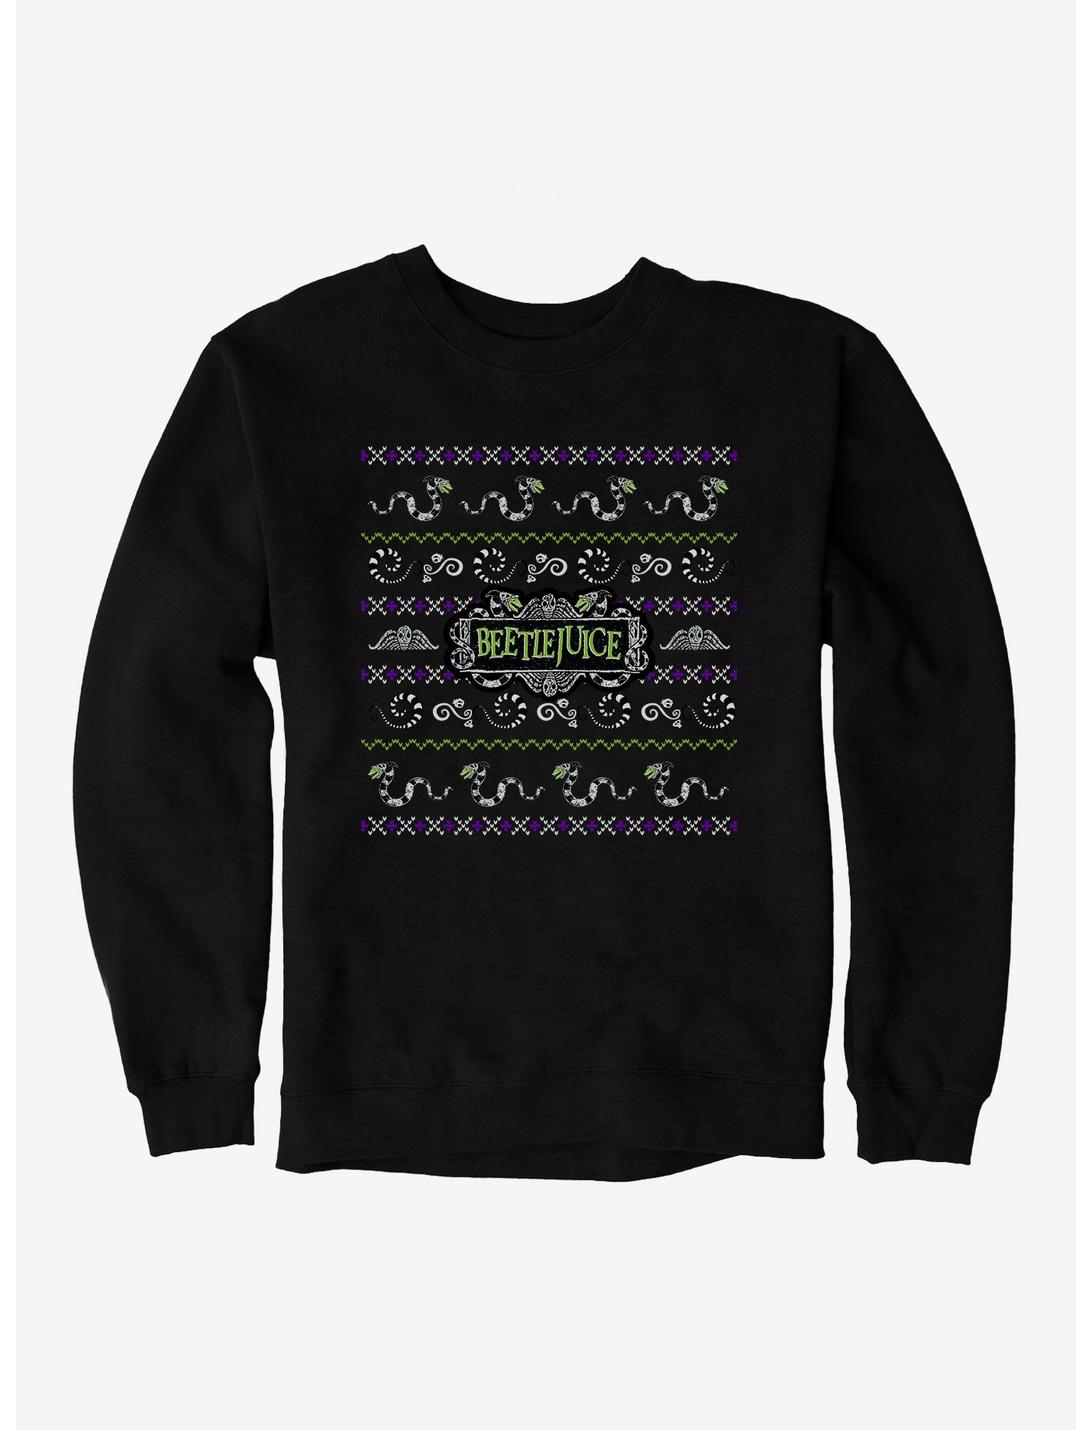 Beetlejuice Ugly Christmas Sweater Pattern Sweatshirt, BLACK, hi-res